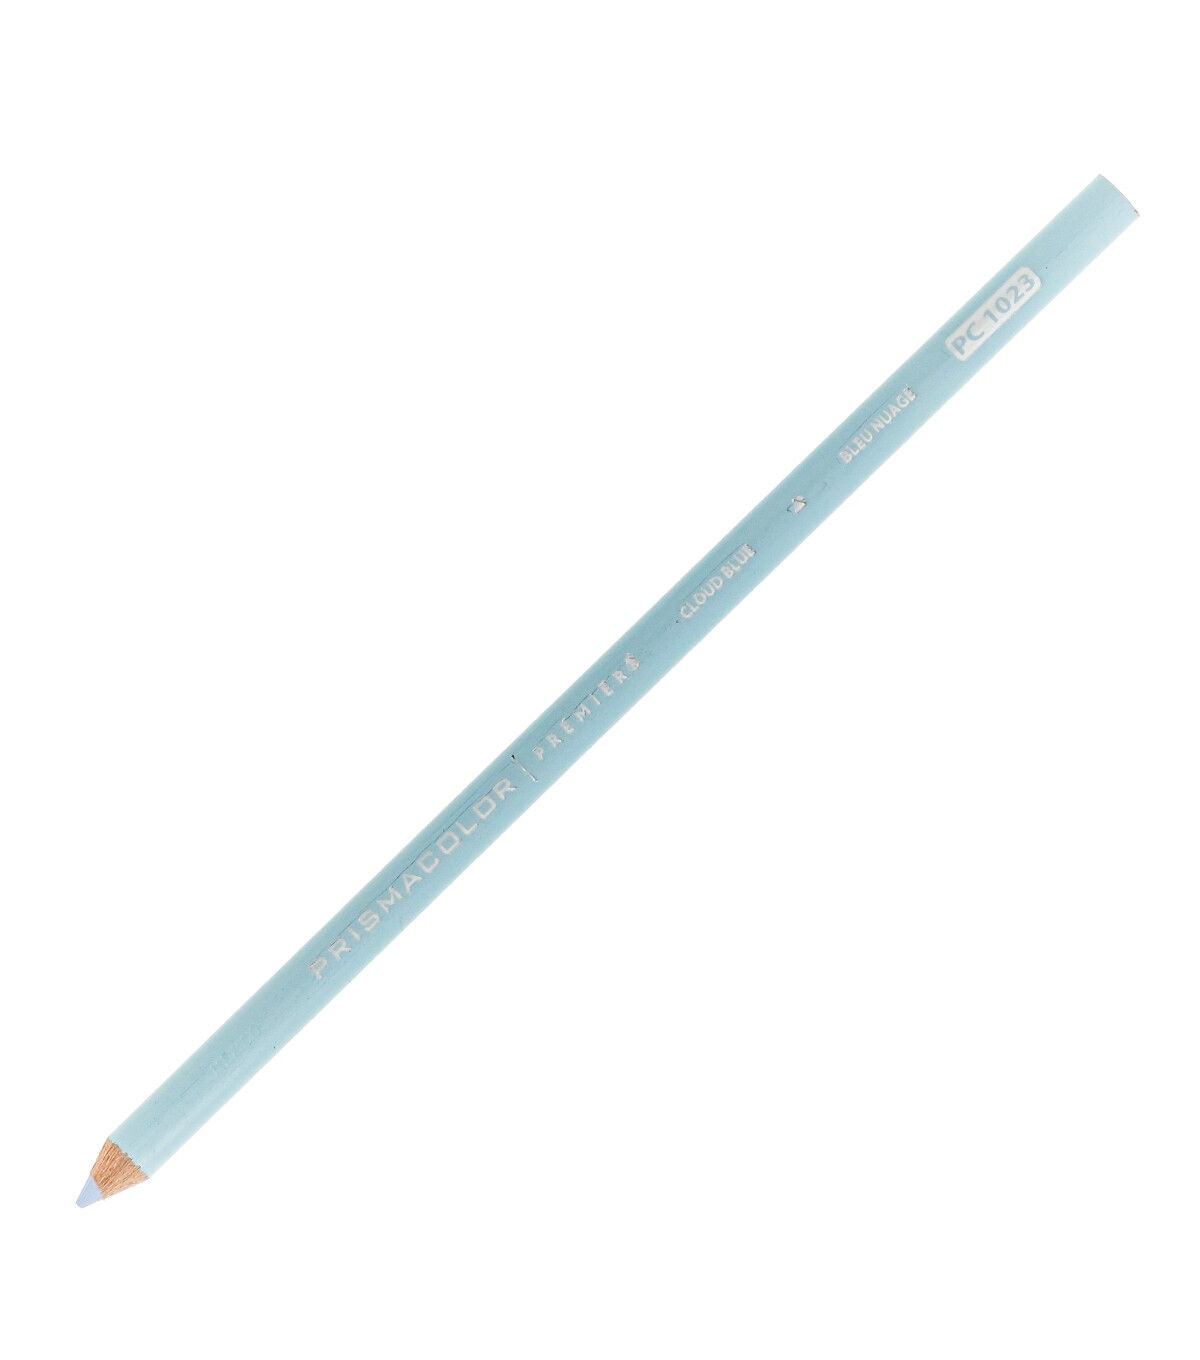 Prismacolor Premier Colored Pencils - 48 Piece Set